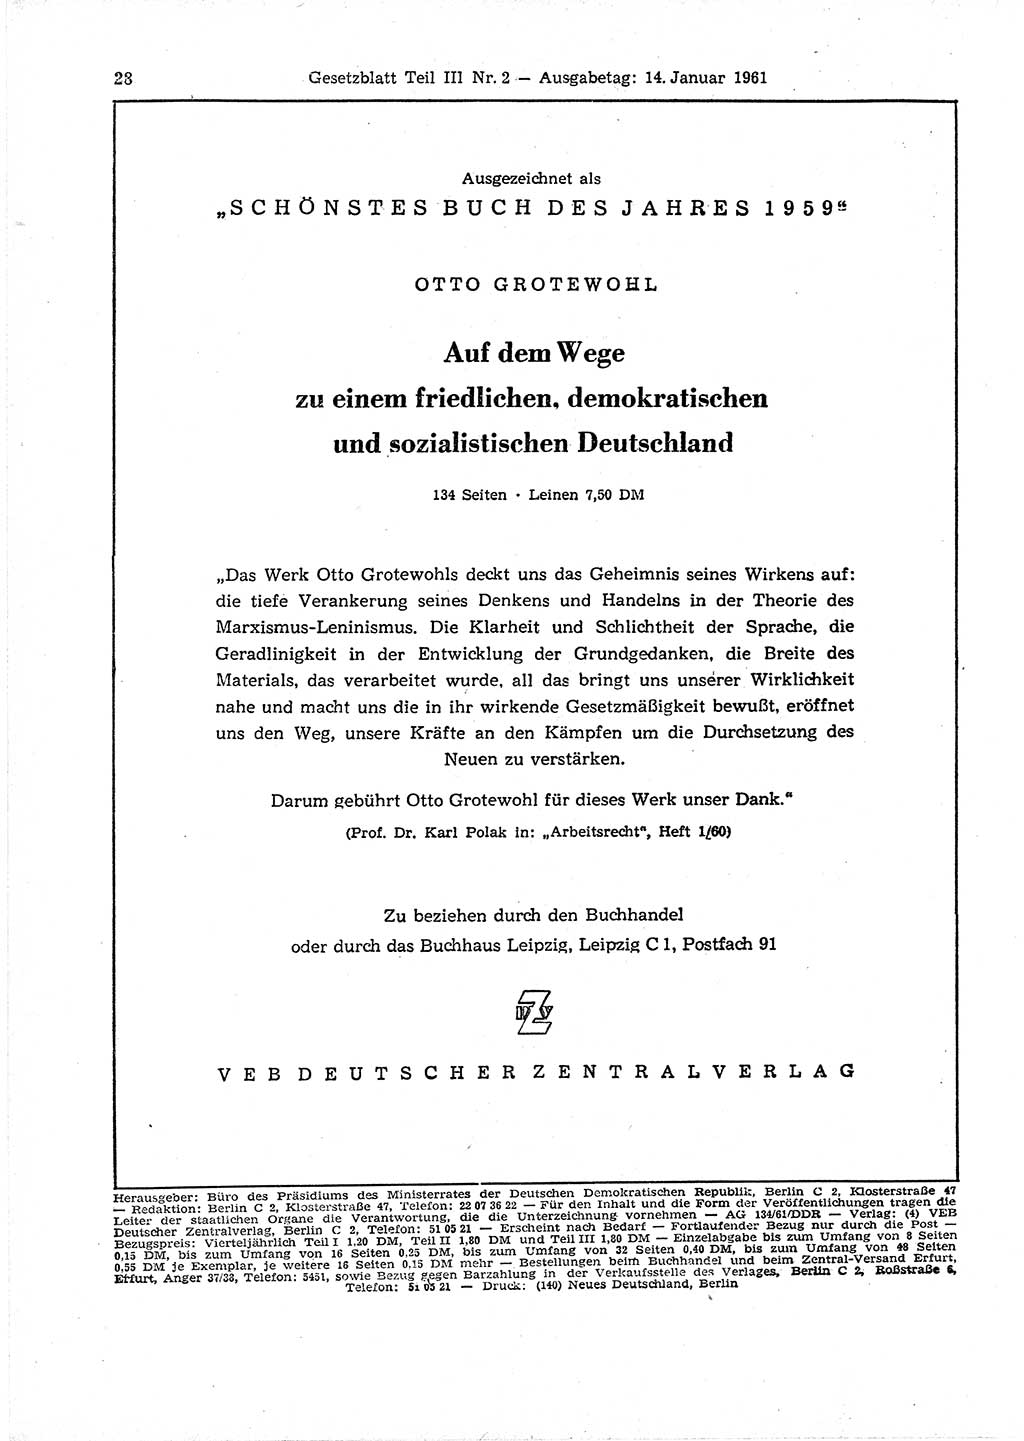 Gesetzblatt (GBl.) der Deutschen Demokratischen Republik (DDR) Teil ⅠⅠⅠ 1961, Seite 28 (GBl. DDR ⅠⅠⅠ 1961, S. 28)